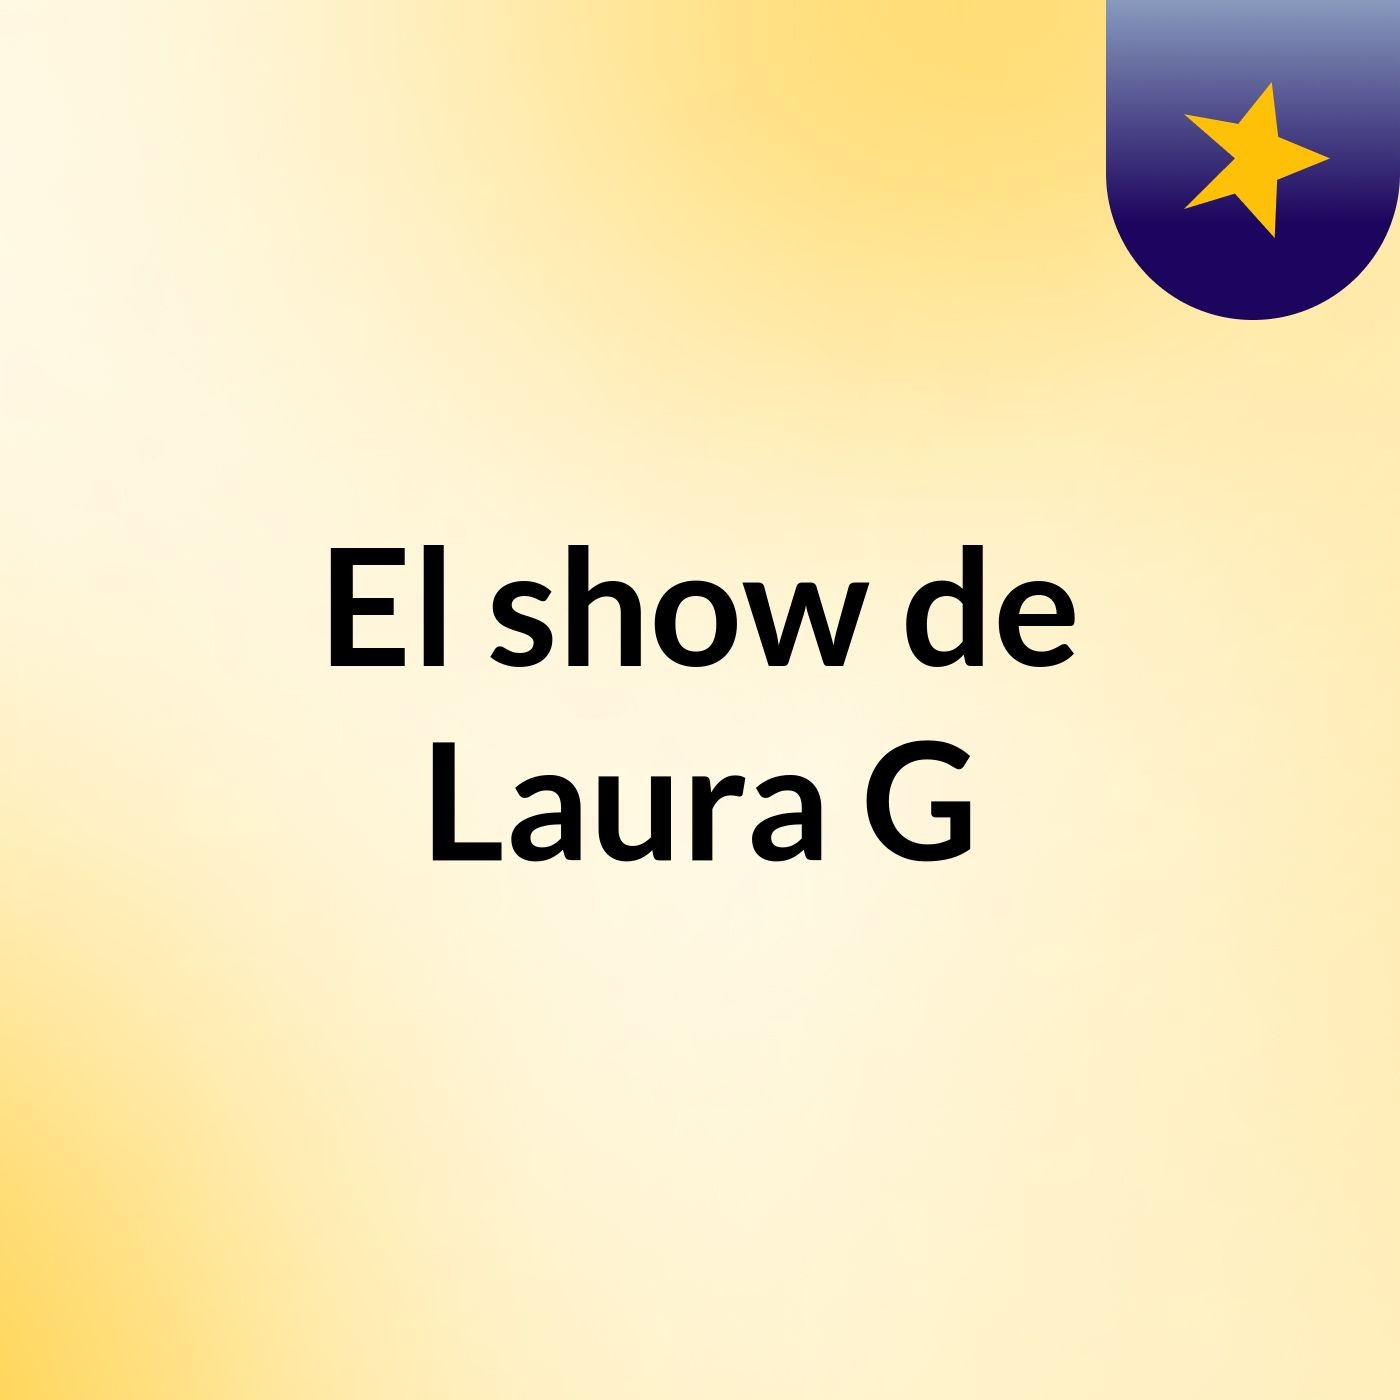 Episodio 2 - El show de Laura G